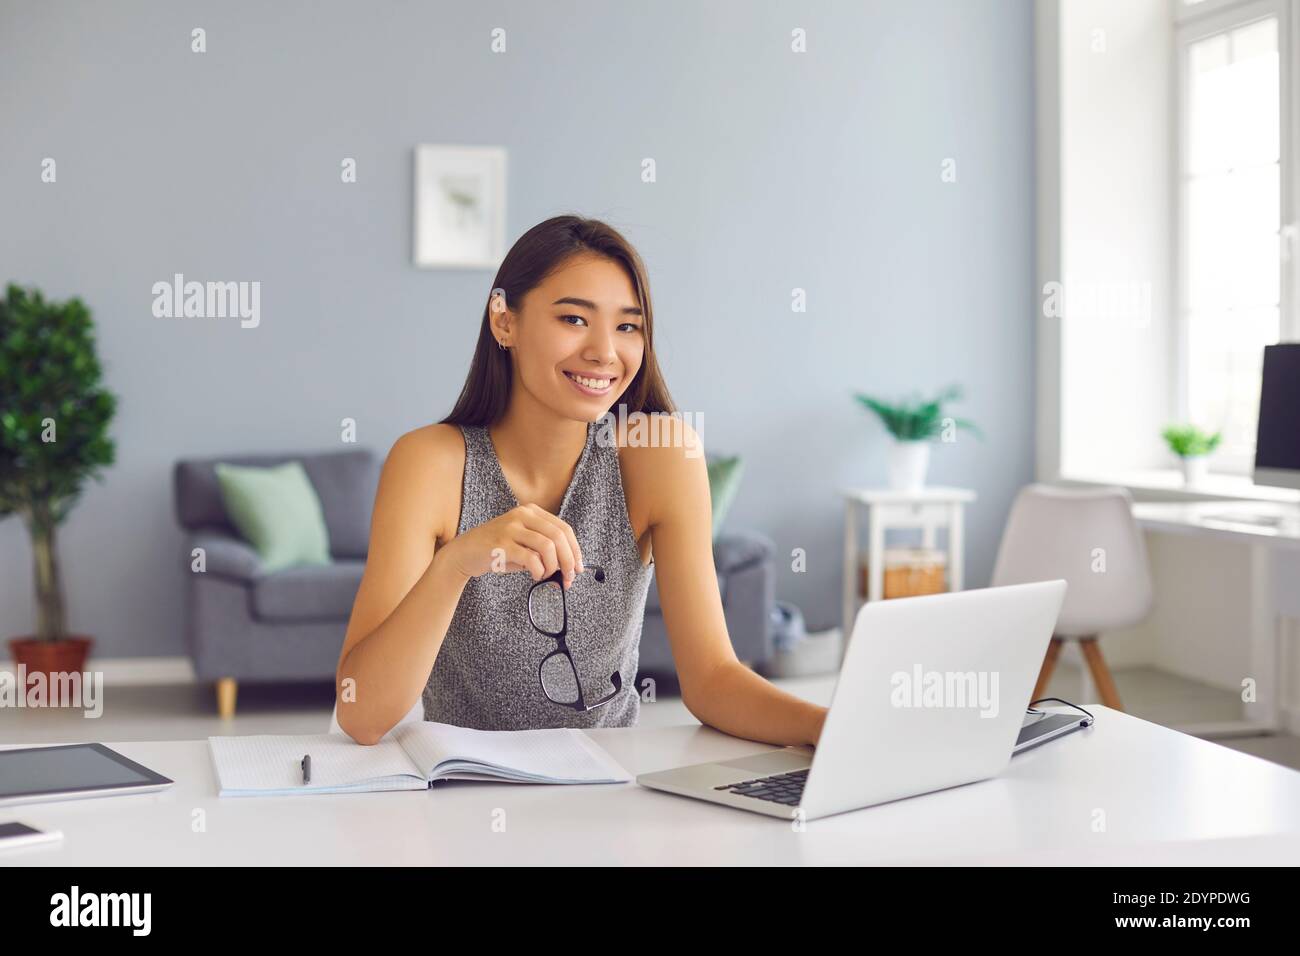 Lächelnd asiatische Frau Büroangestellte arbeiten in modernen geräumigen Büro Mit Laptop Stockfoto